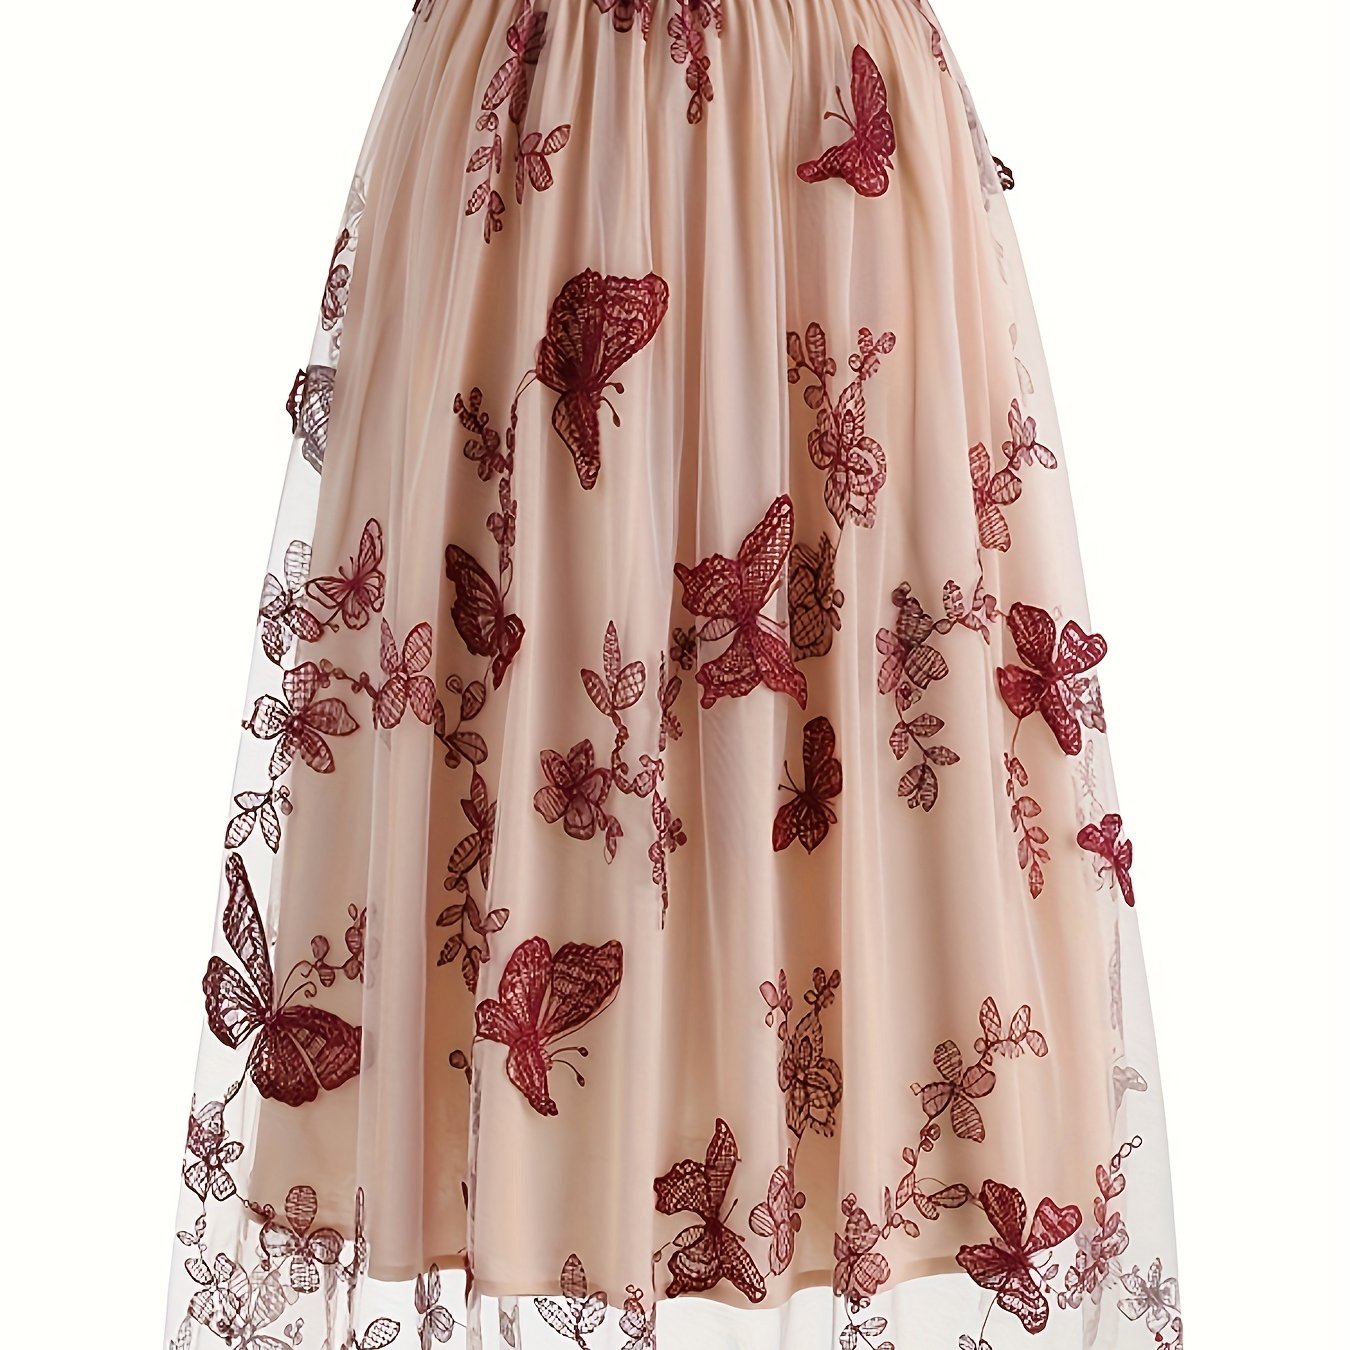 vlovelaw  Butterfly Embroidered Mesh Skirt, Elegant High Waist Skirt, Women's Clothing